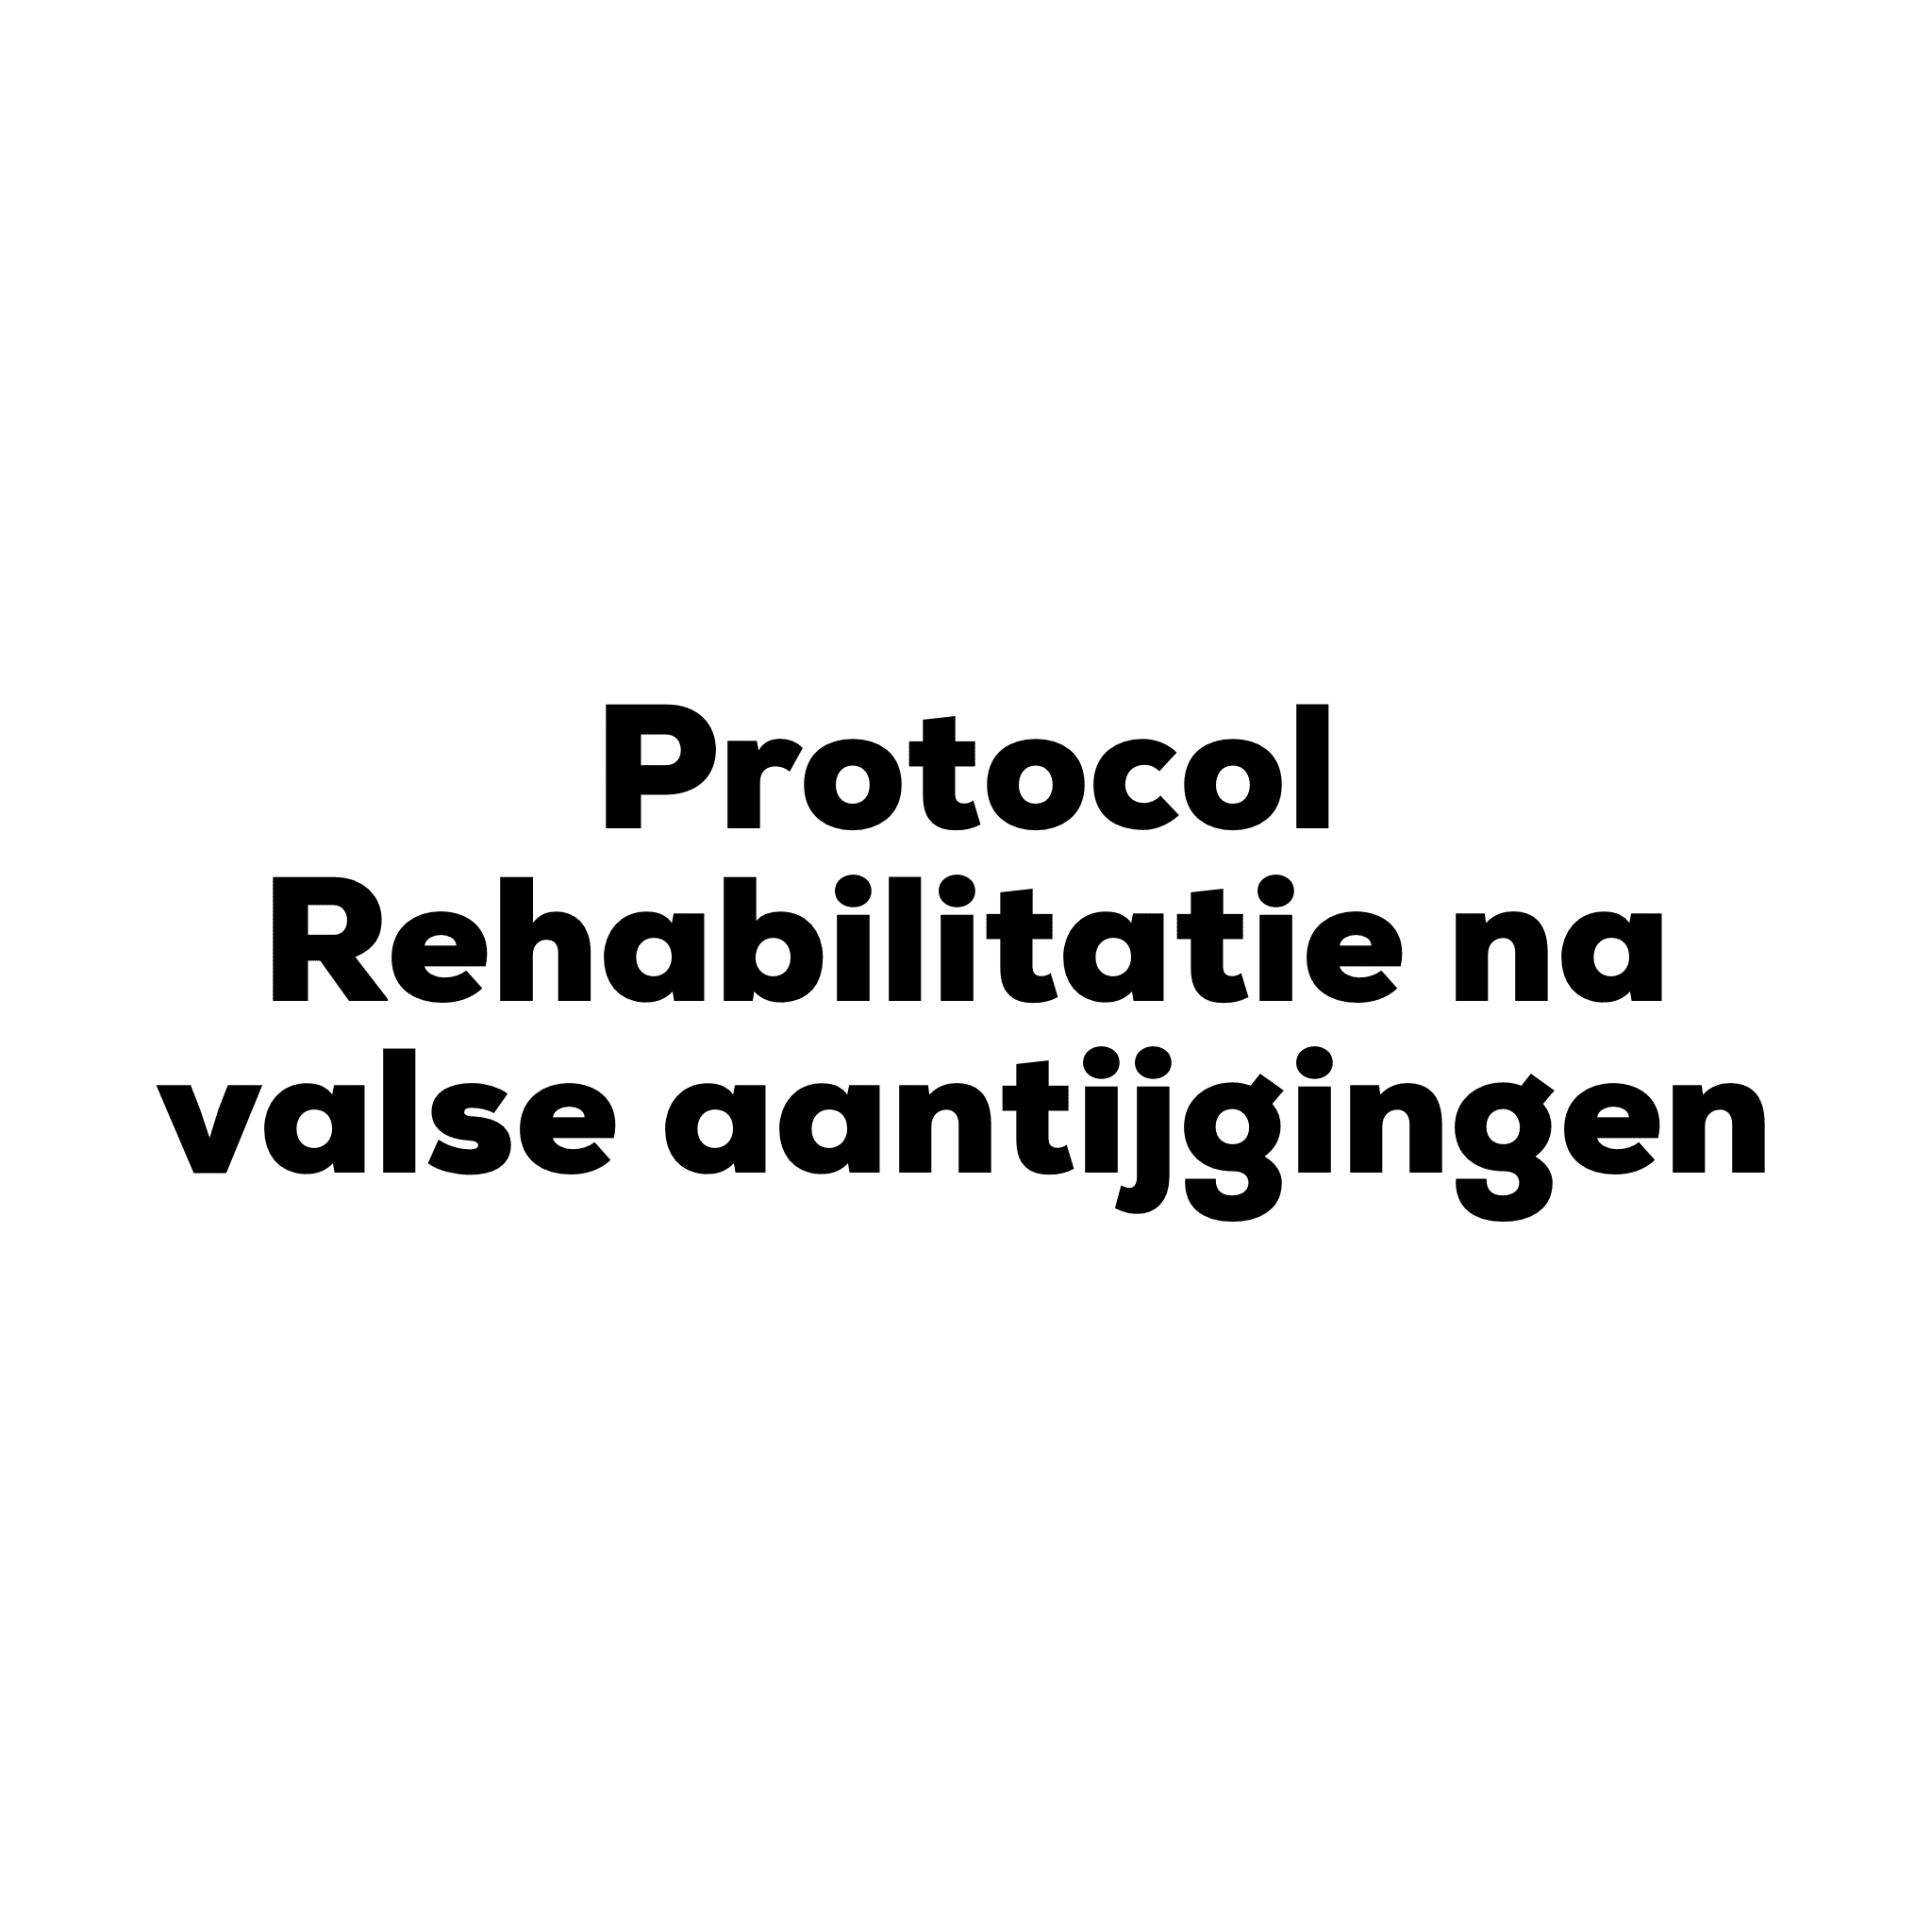 Protocol Rehabilitatie na valse aantijgingen